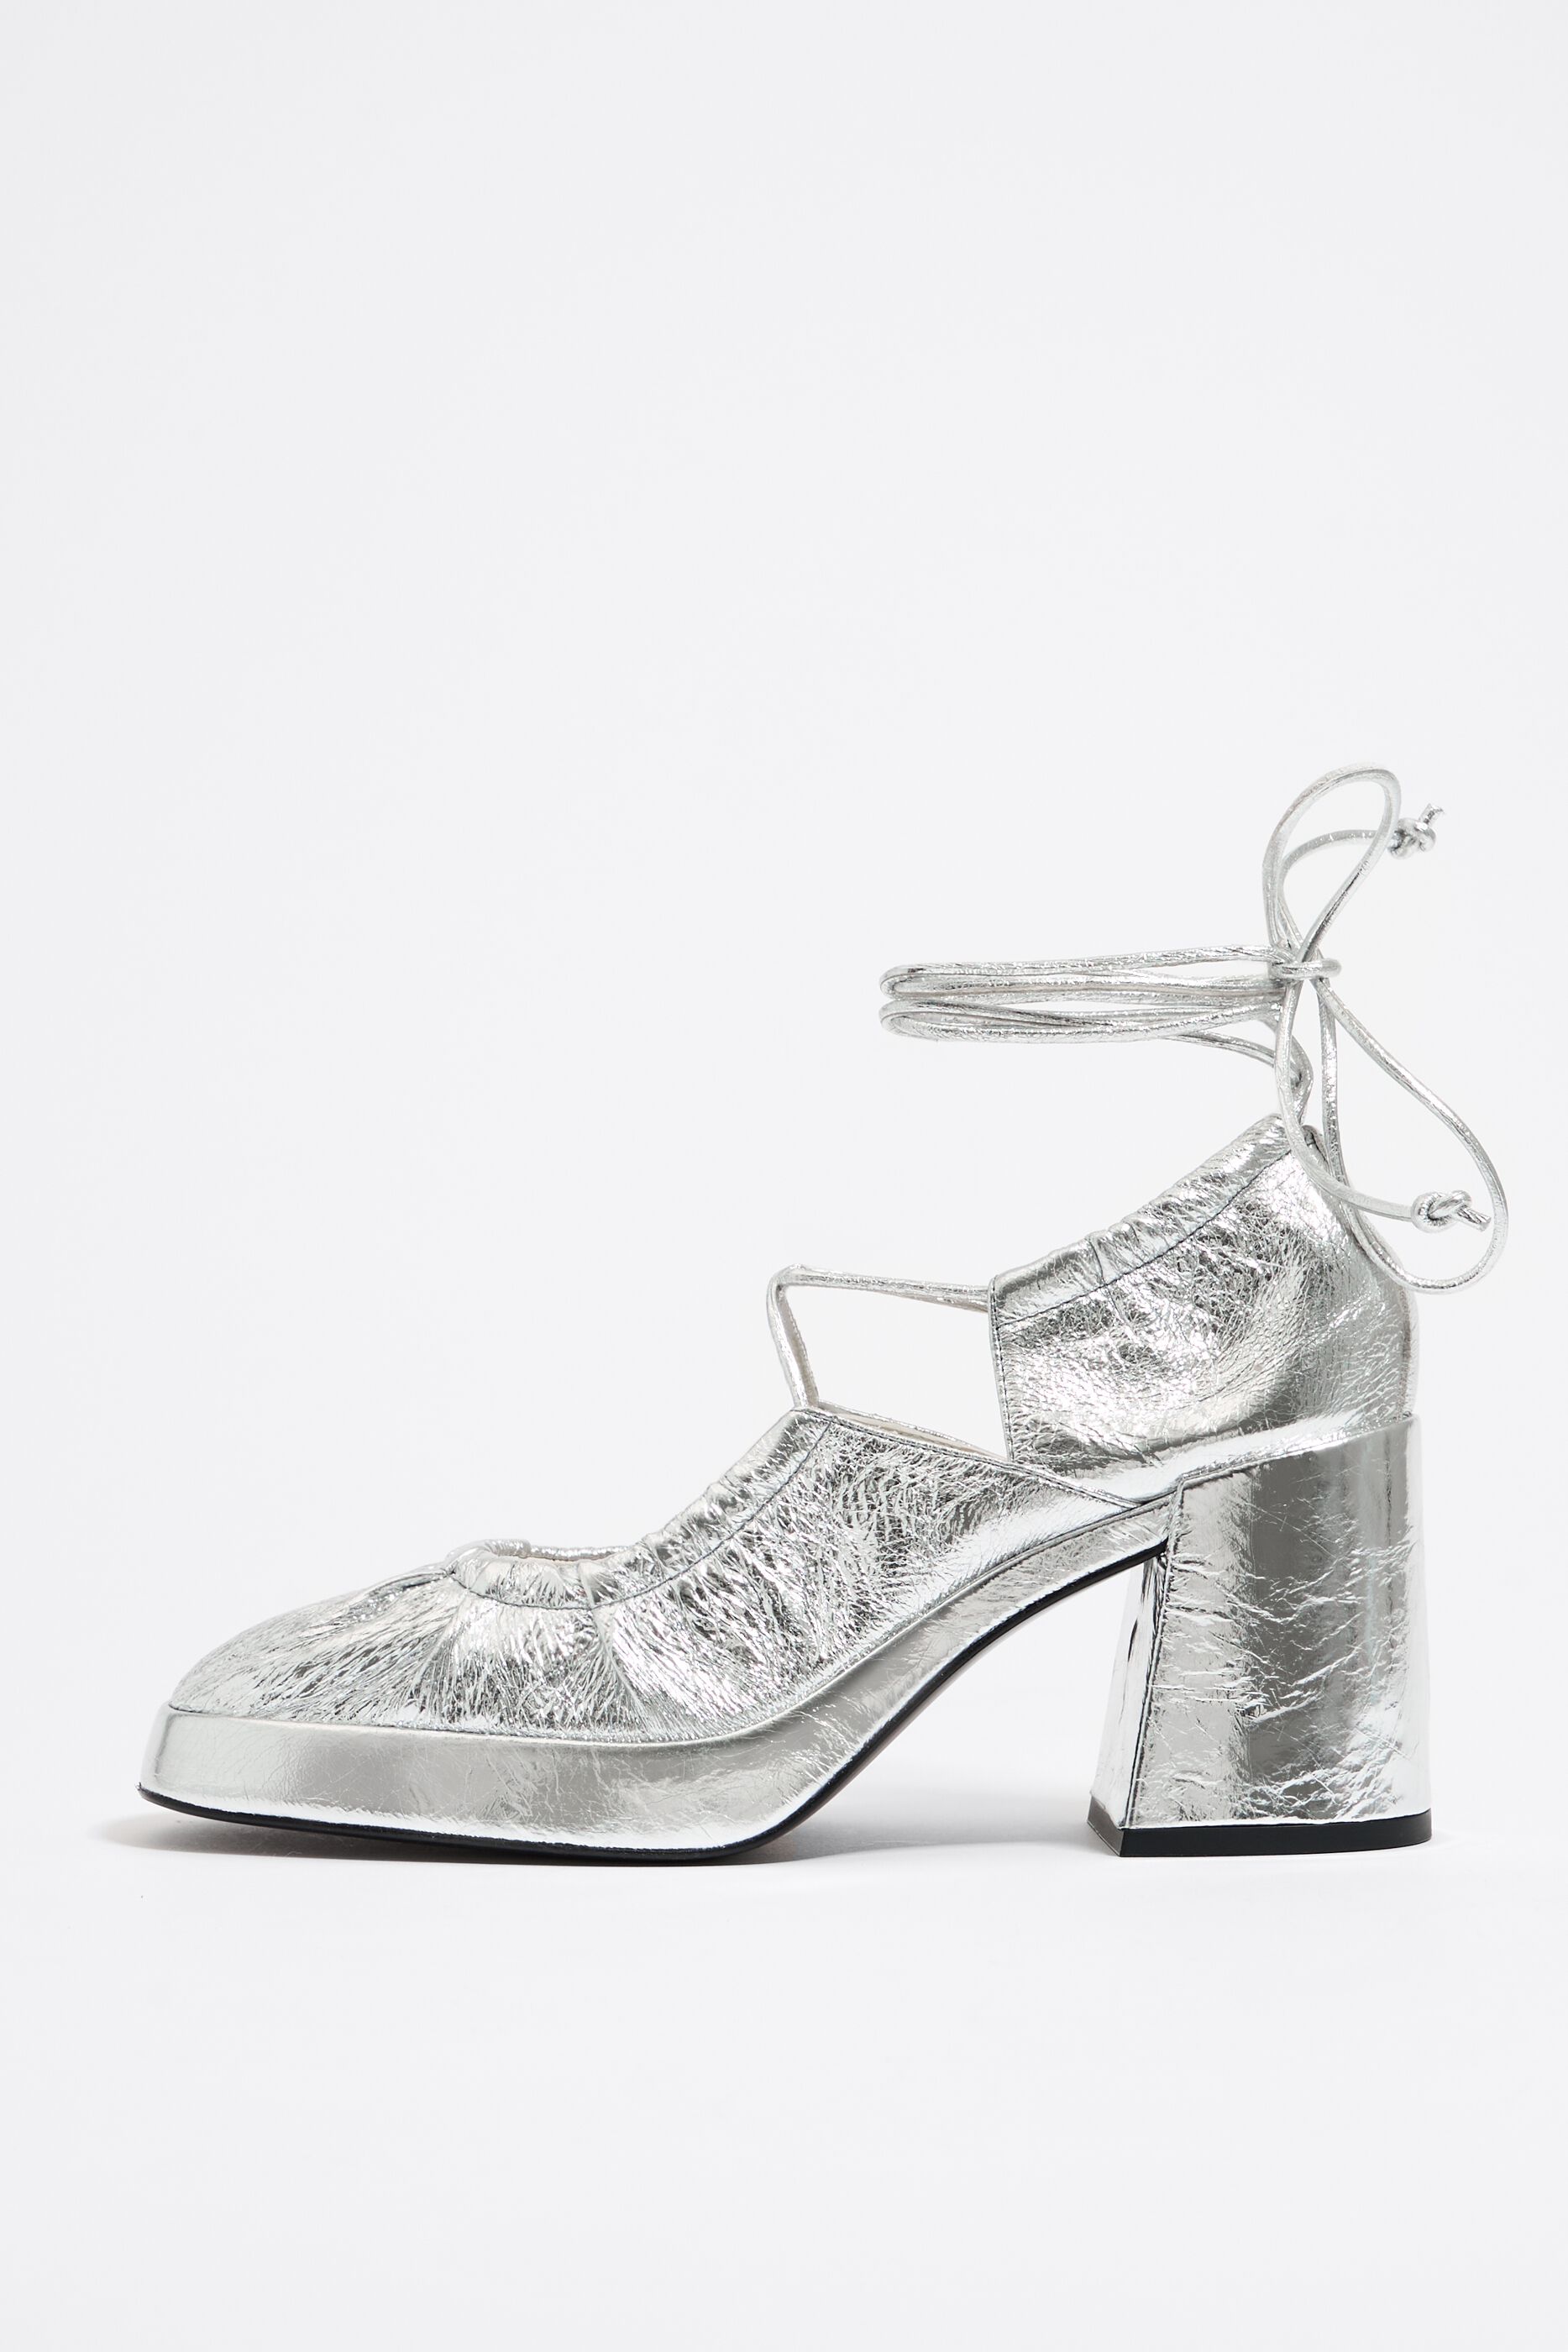 River Island court heels with block heel in silver sequin | ASOS